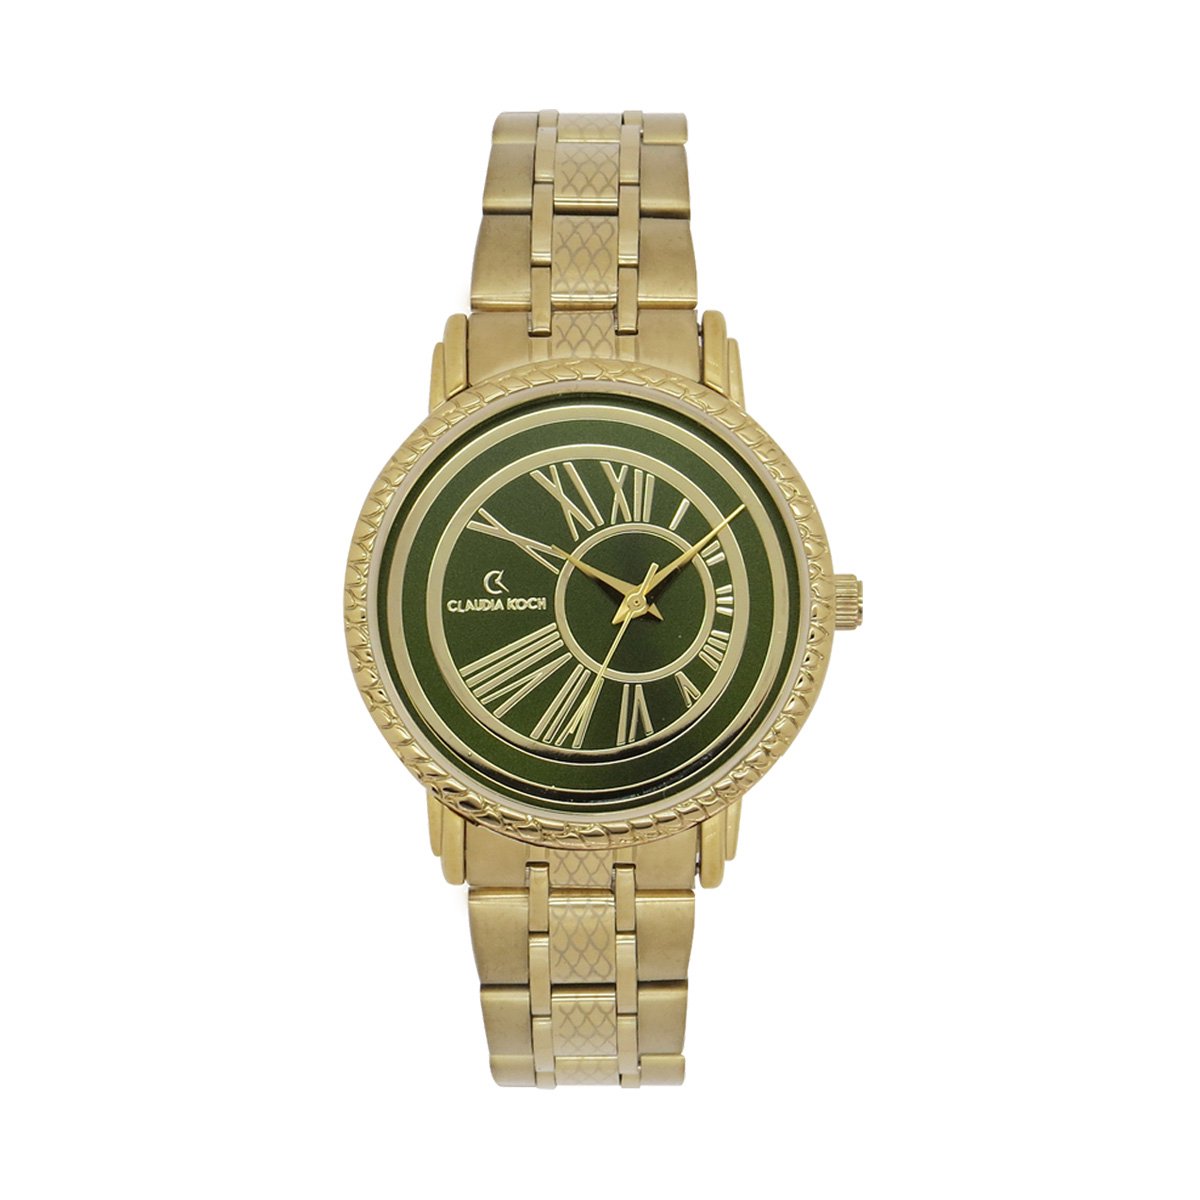 ClaudiaKoch CK 219432 Gold Women Stainless Steel Analog watch